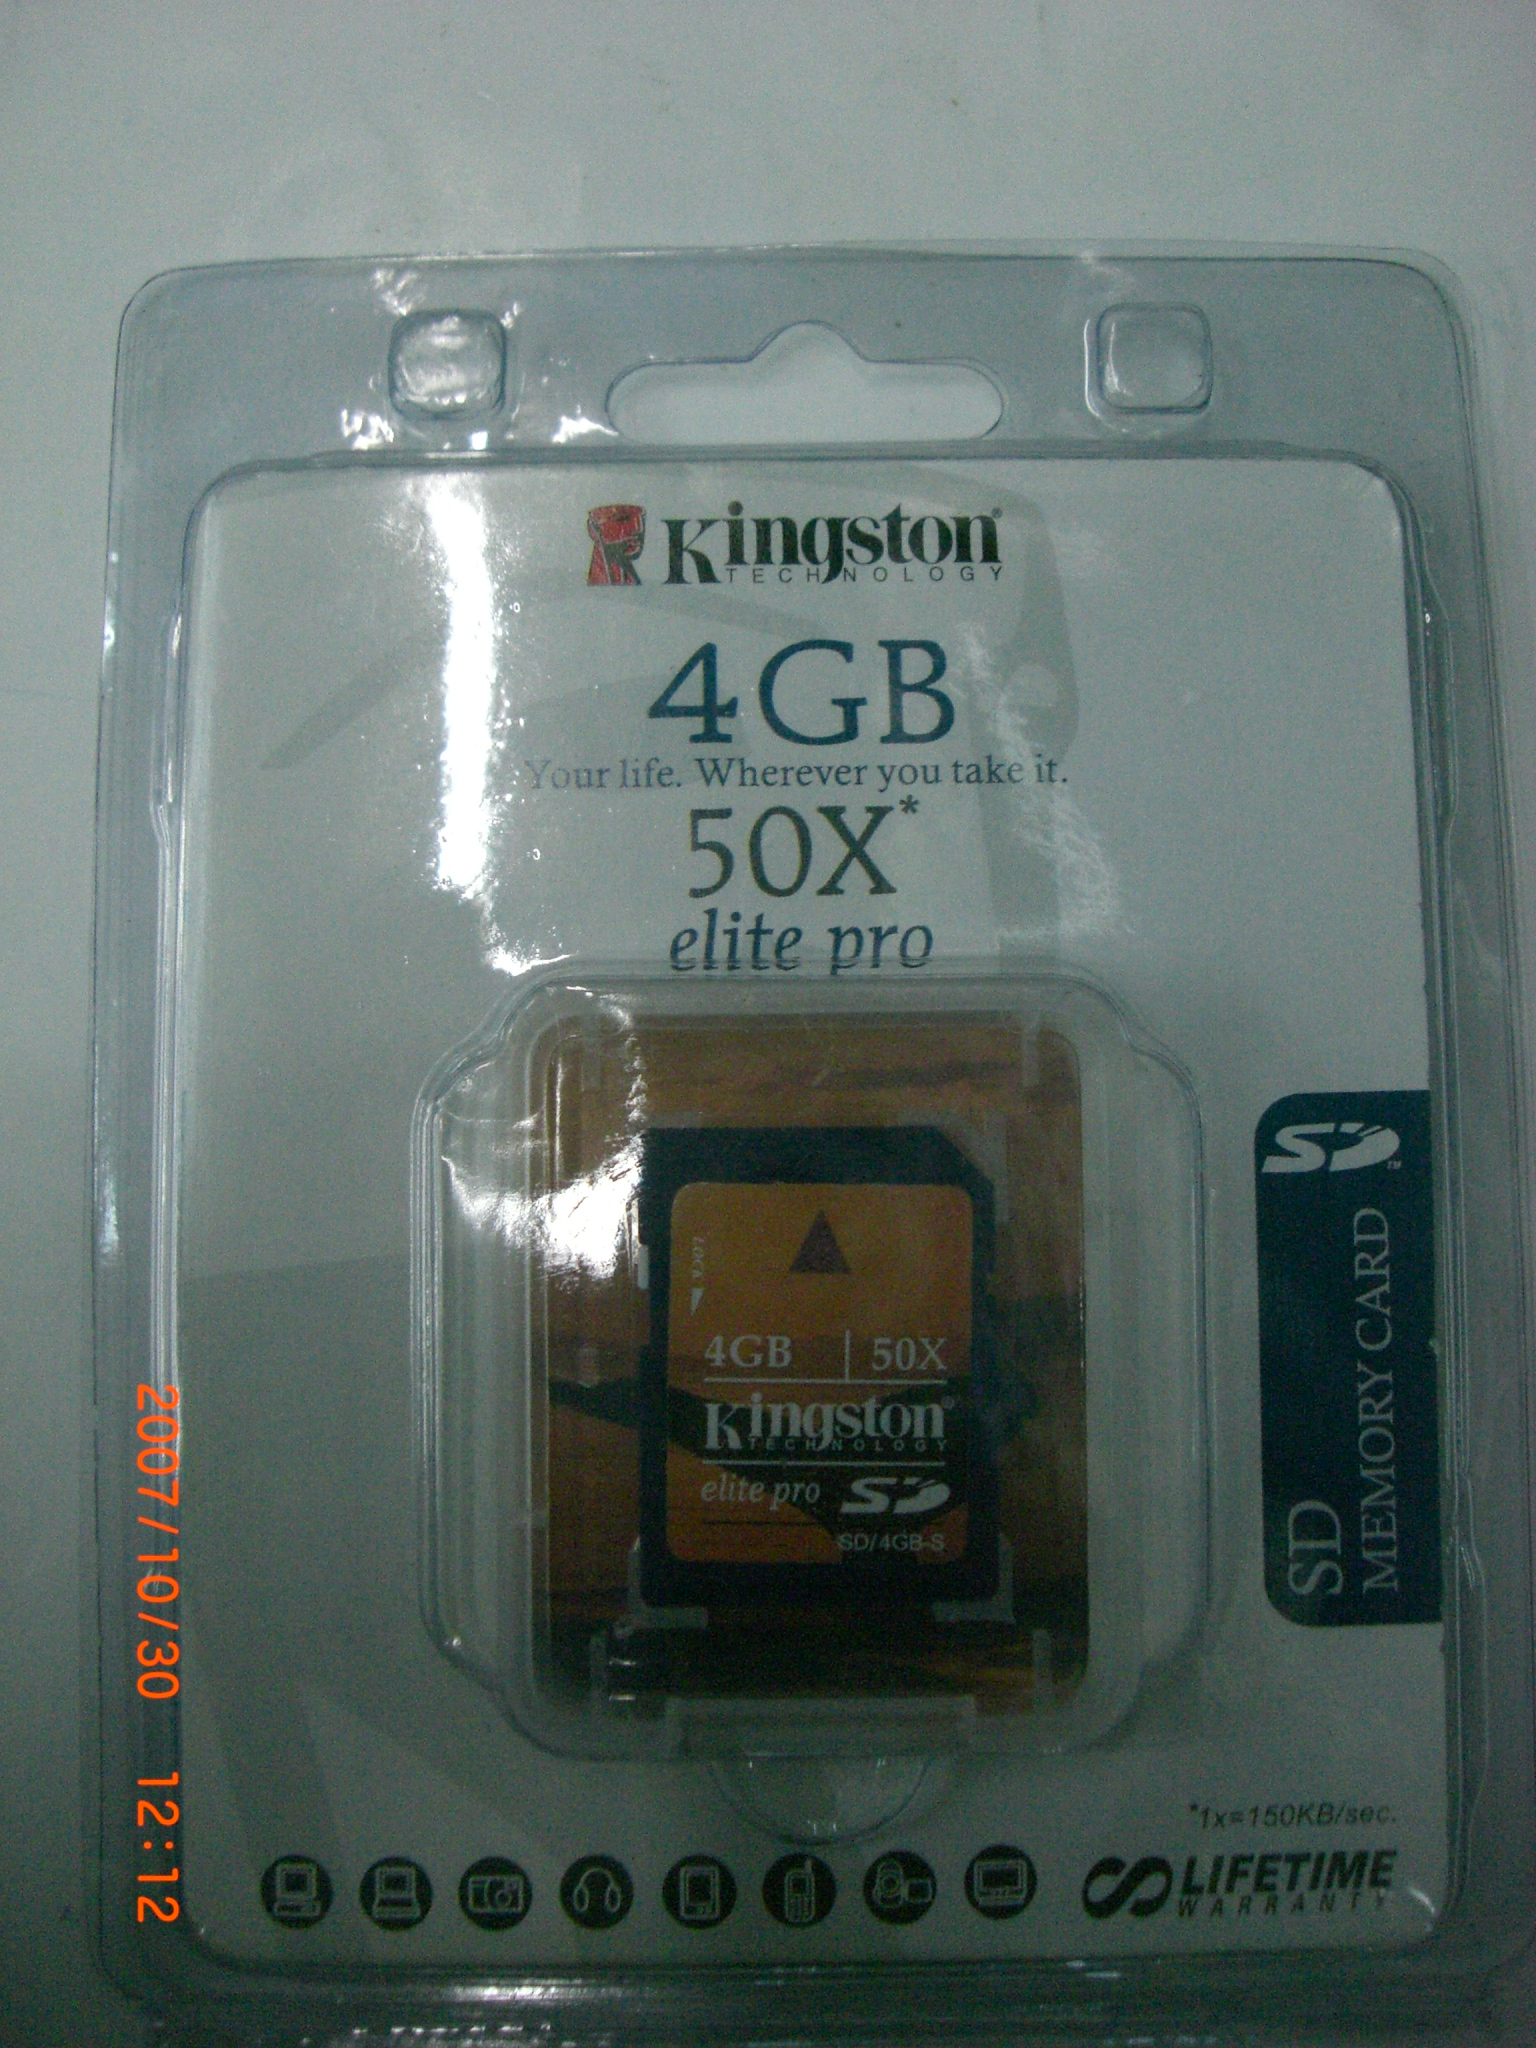 SD card of 4GB,Produit electronic et informatique